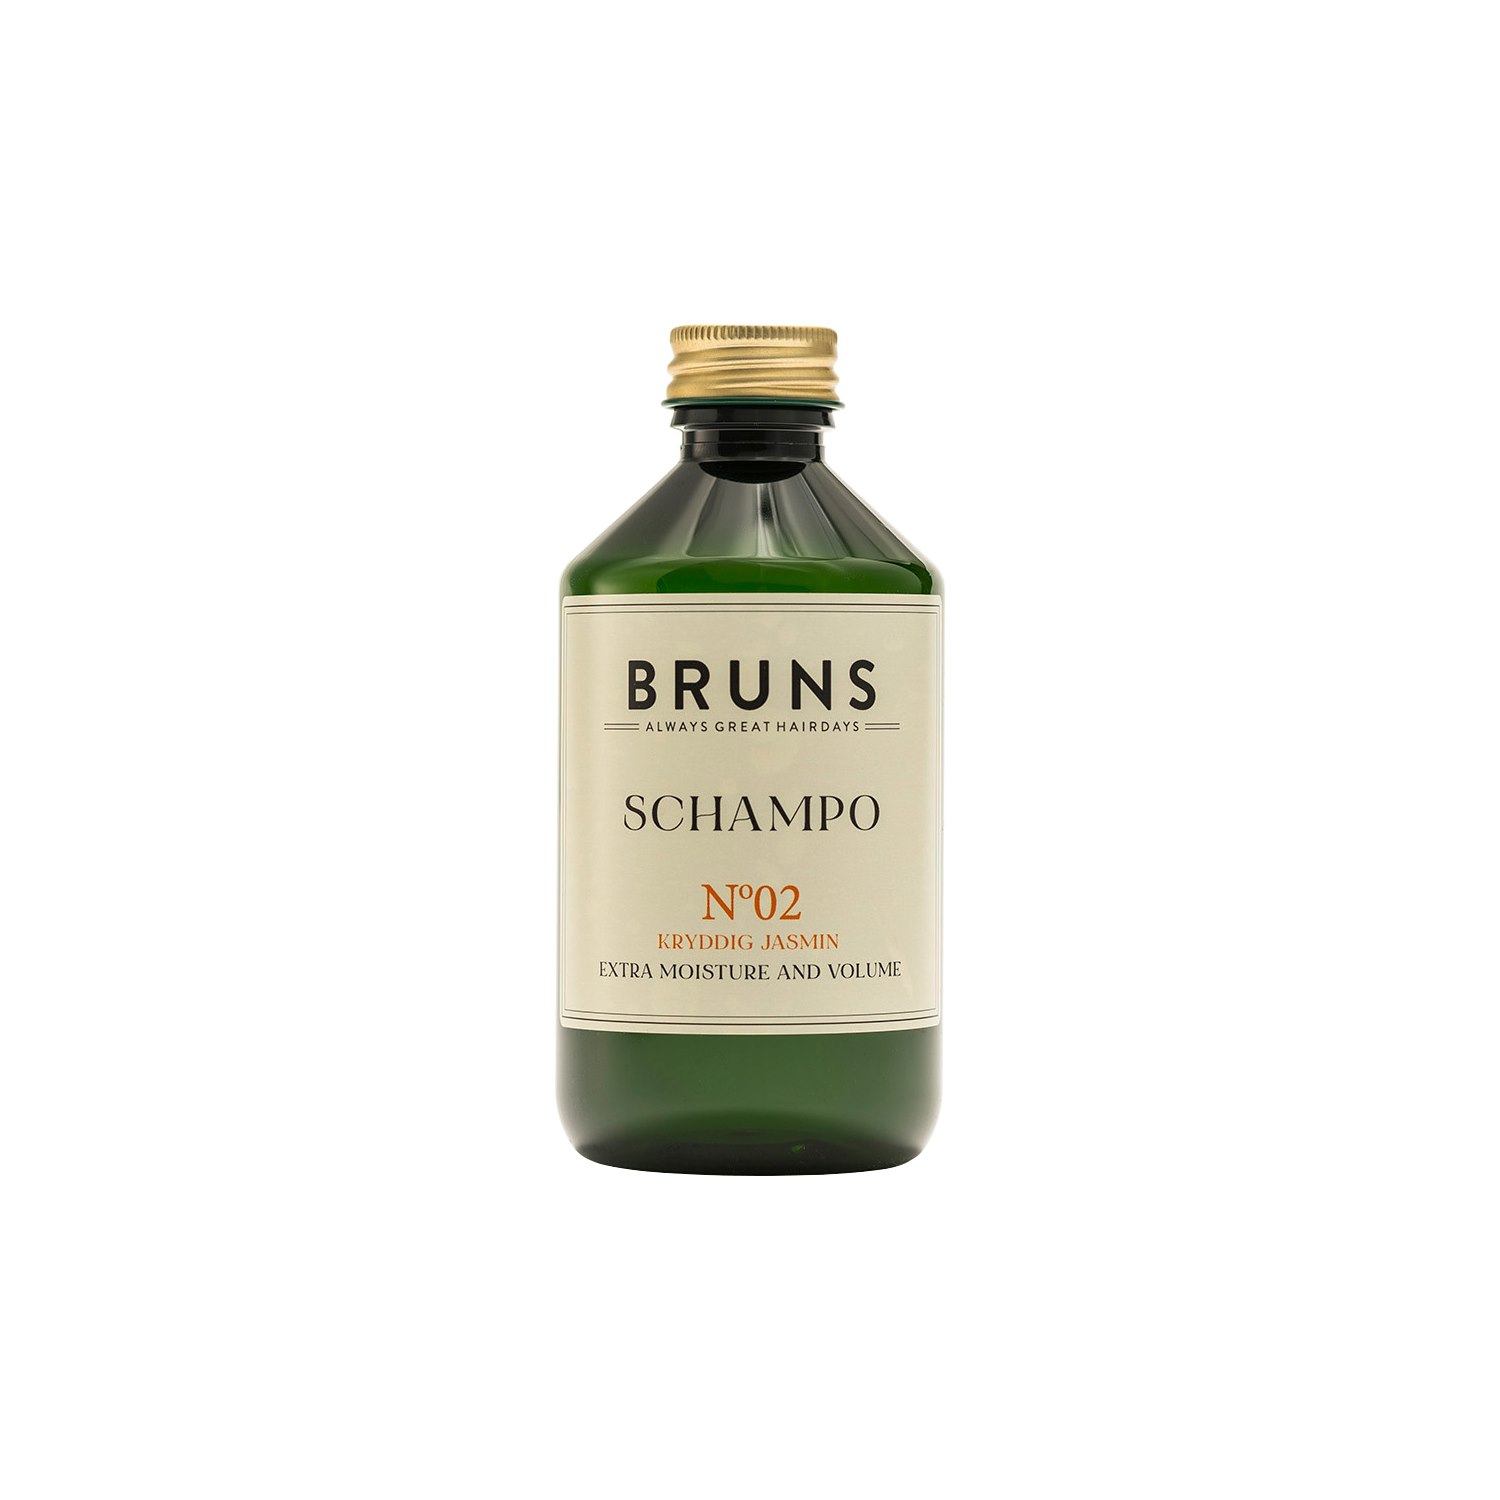 BRUNS Schampo Nº02 - Kryddig Jasmin 300 ml